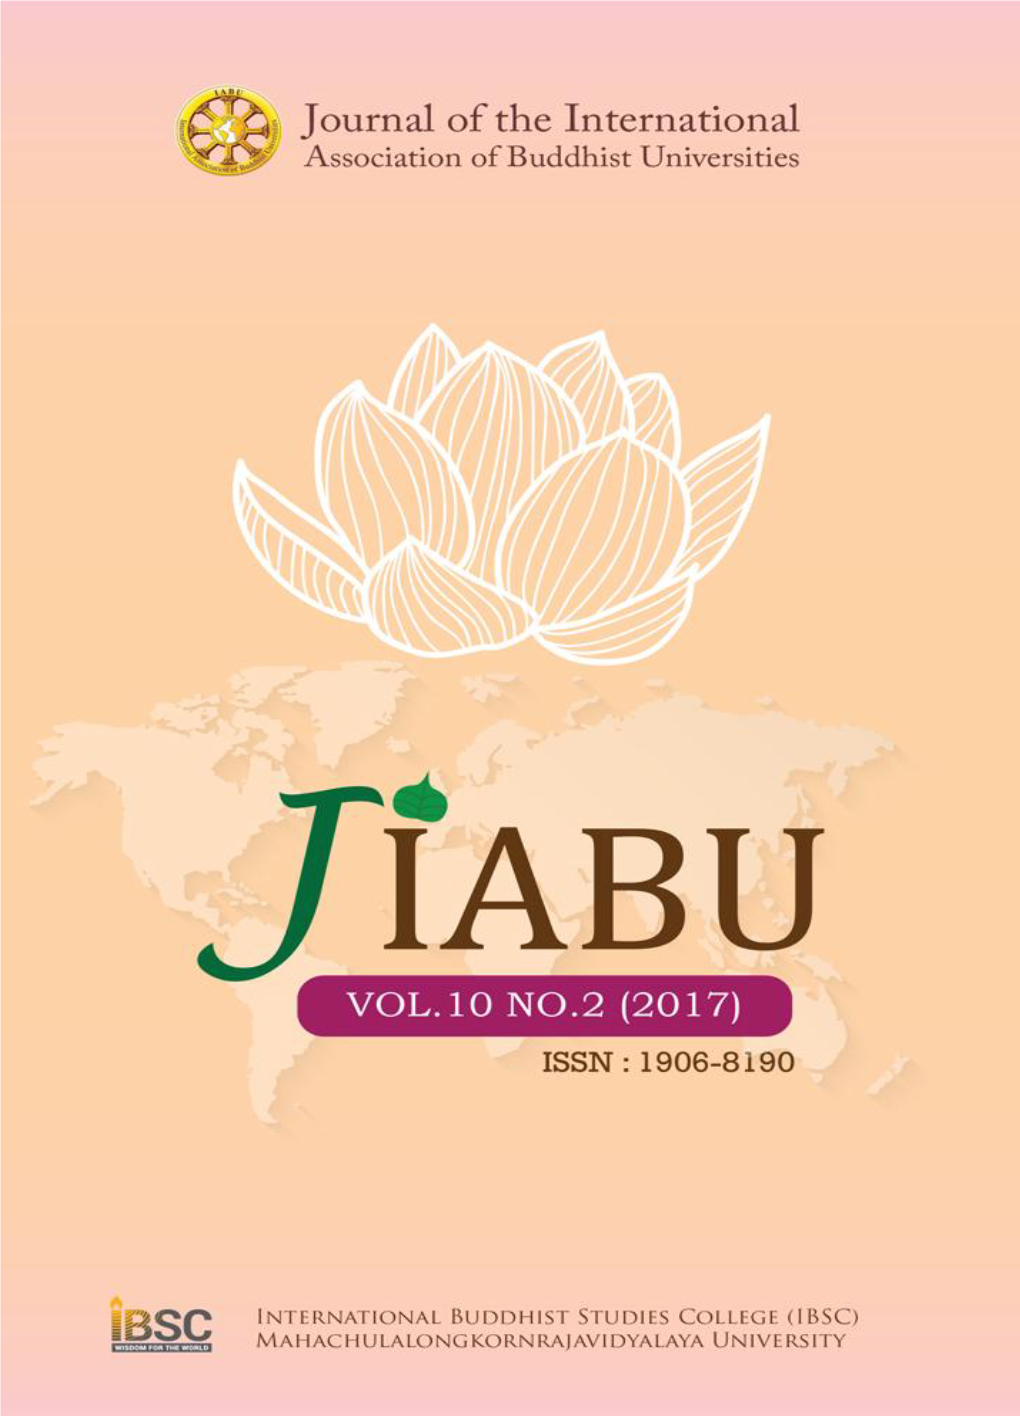 The Journal of the International Association of Buddhist Universities (JIABU)